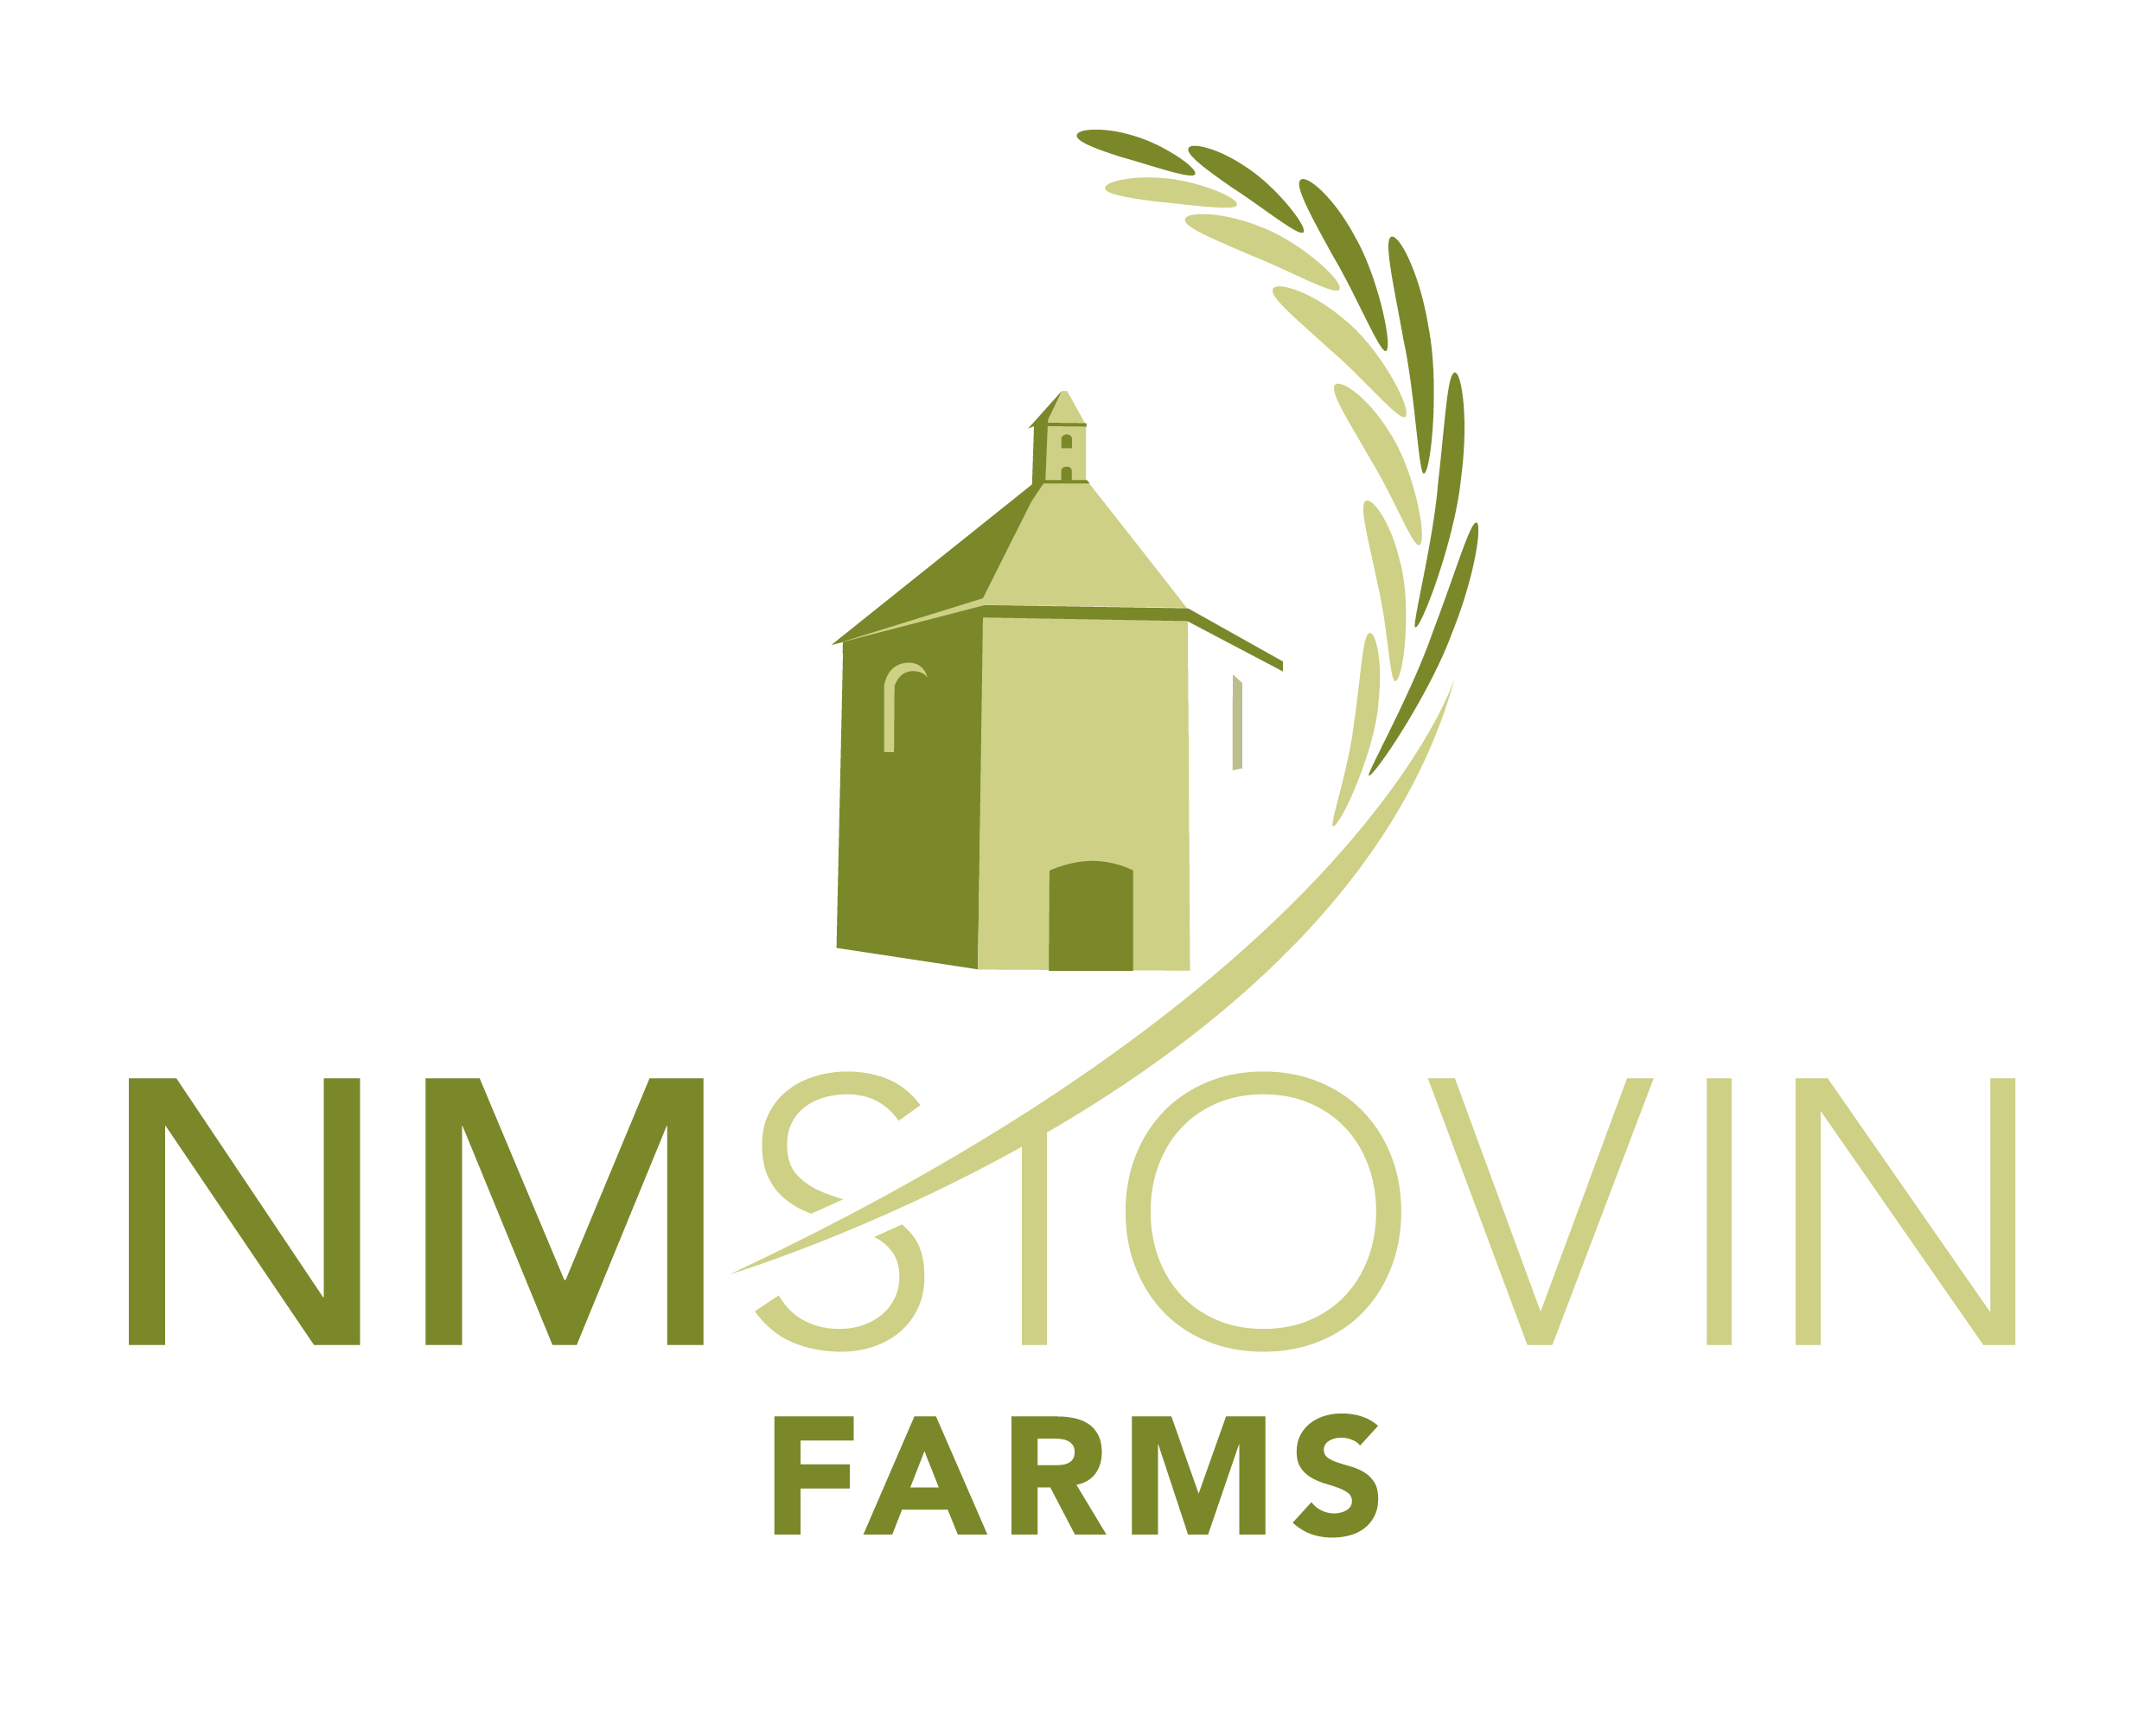 N M Stovin Farms Logo